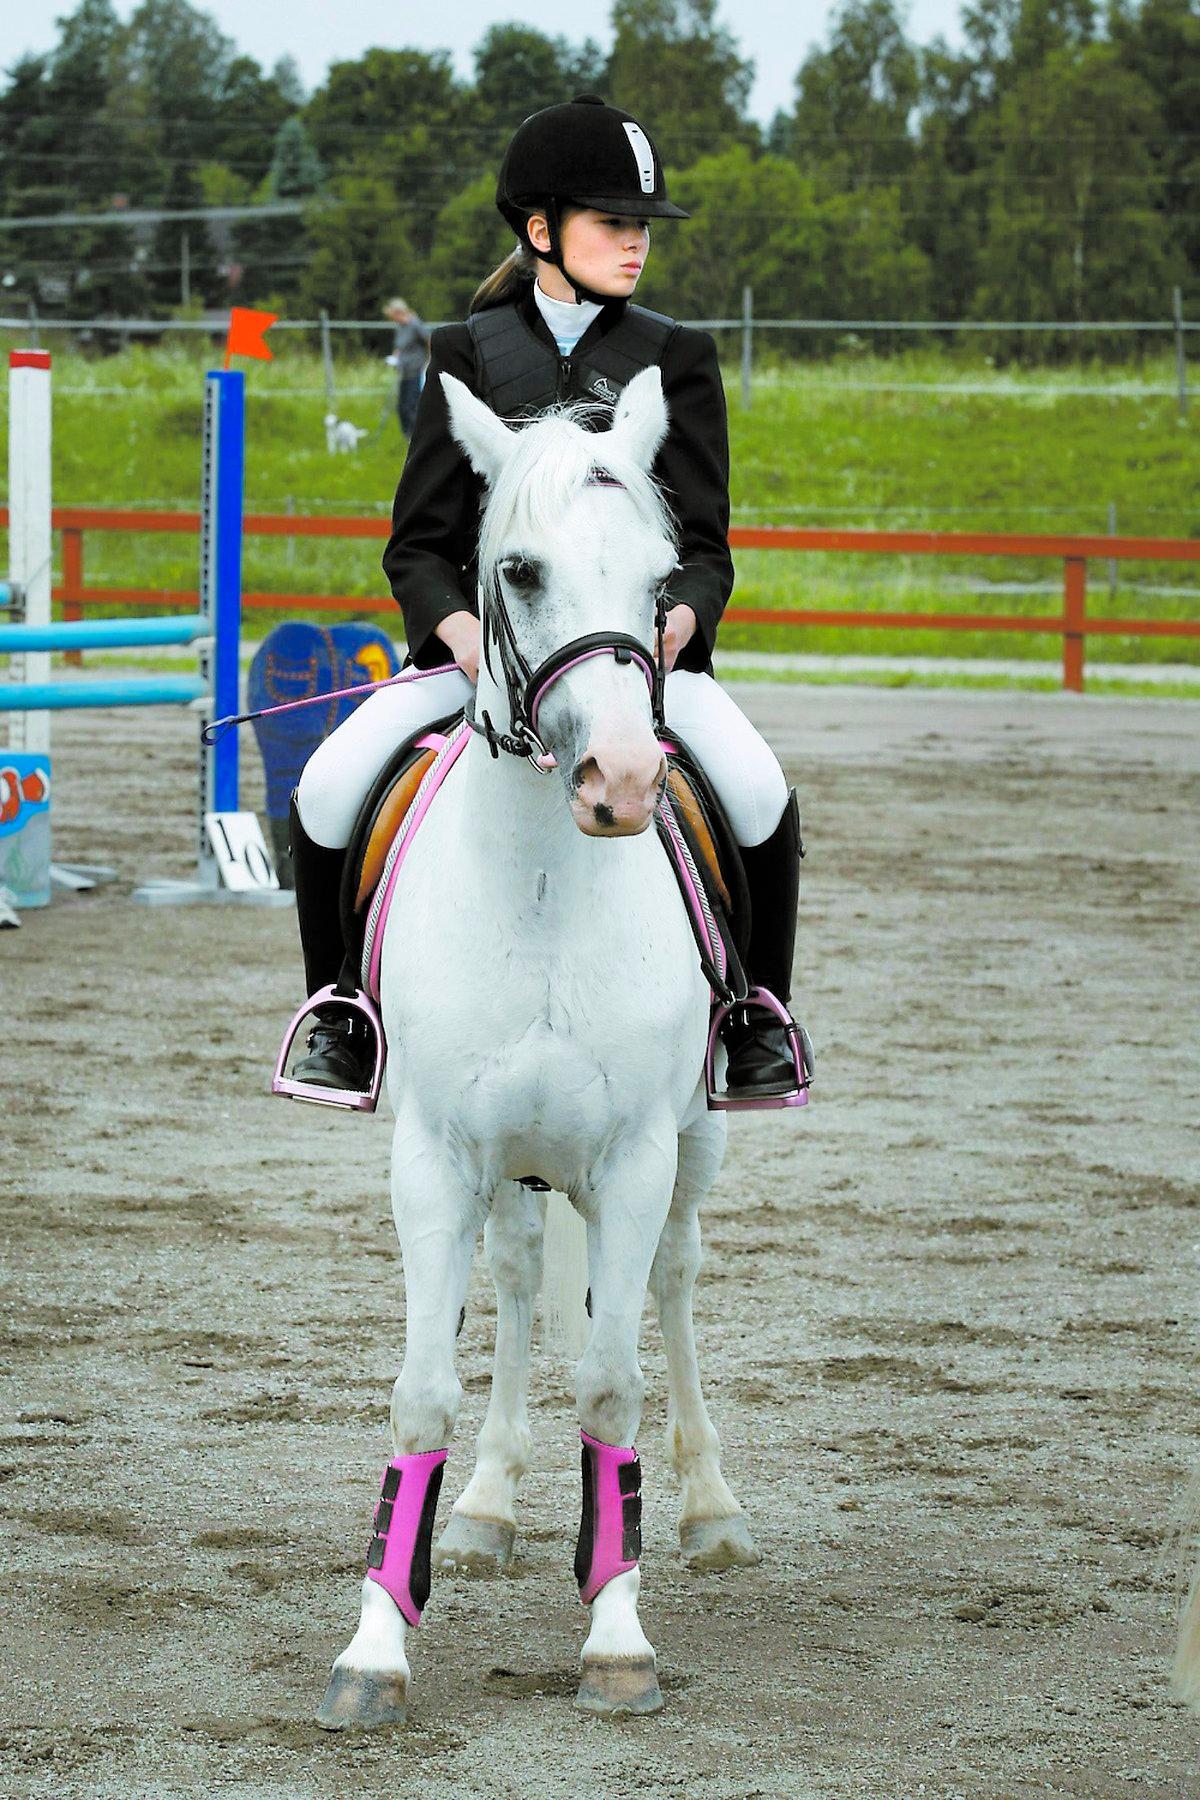 TÄVLAdE Danai Doverholt fick sin ponny Silver i våras, tillsammans vann de DM i Dalarna för B-ponnyer. Nu är Silver död.